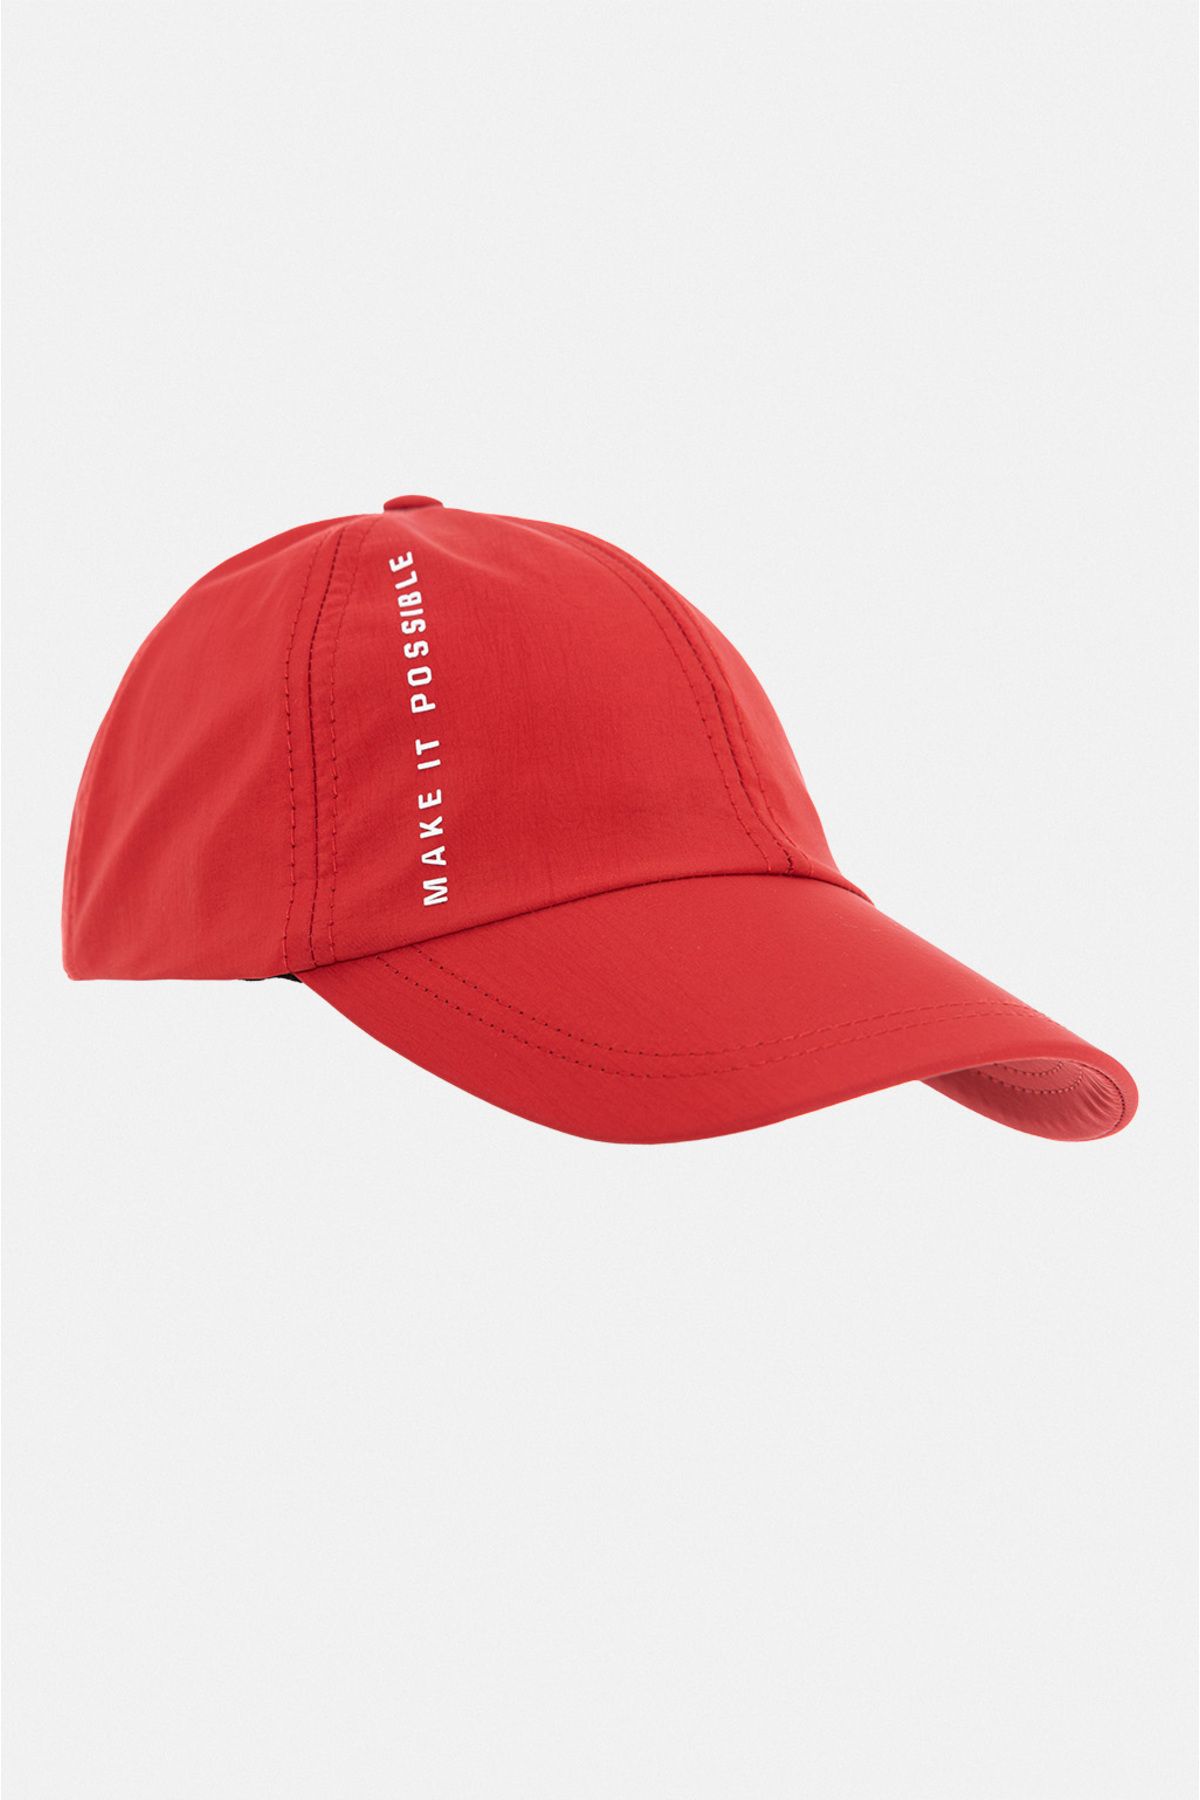 Avva Erkek Kırmızı Slogan Baskılı Spor Şapka A31y9200